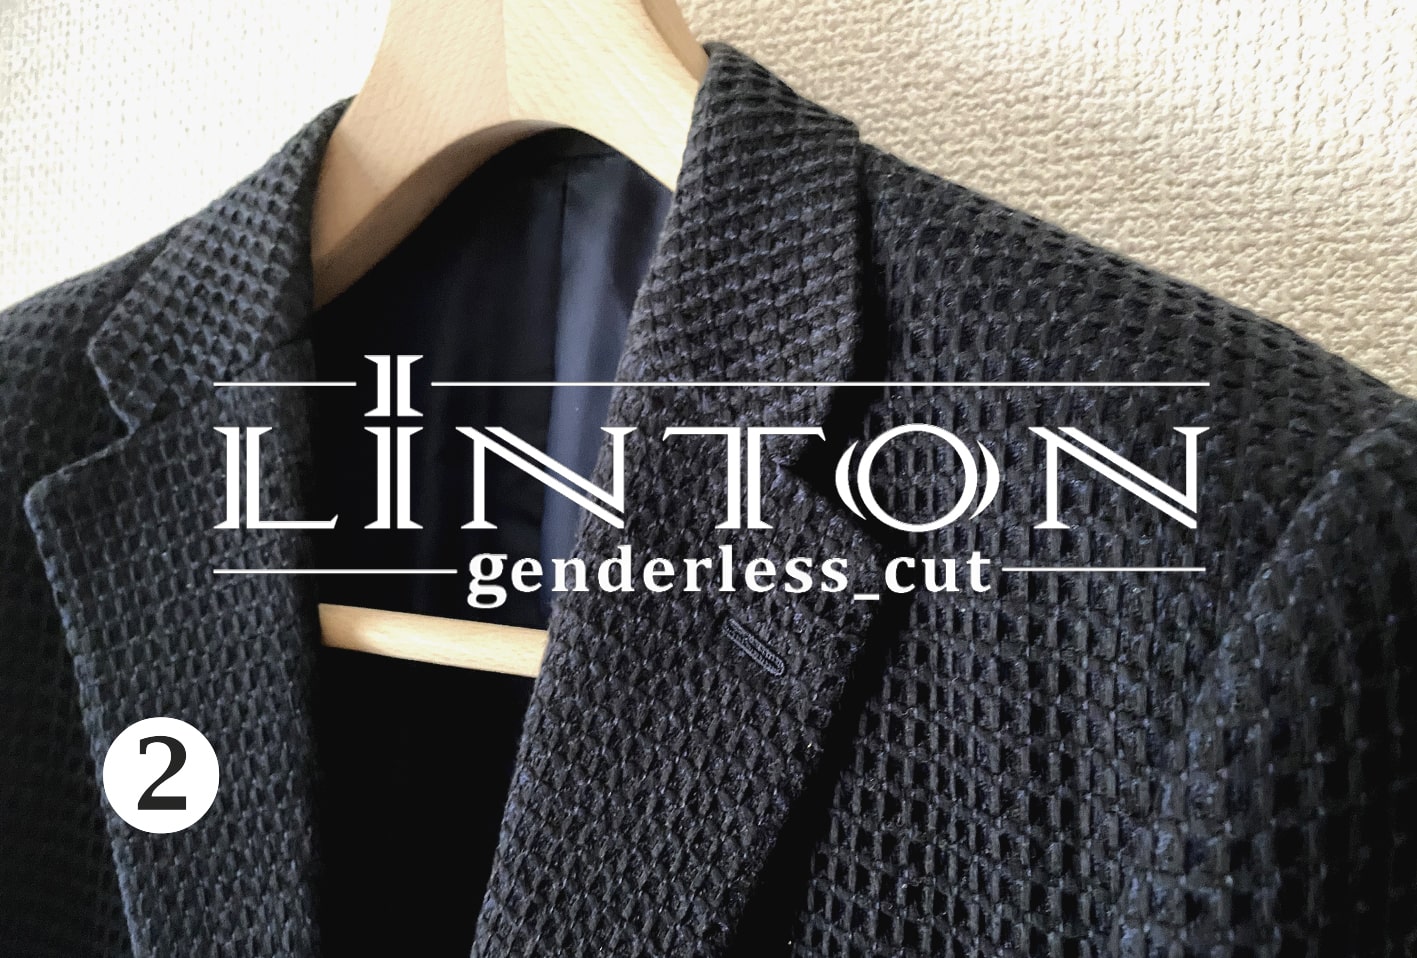 膨大な英国の服地コレクションより 男女兼用テーラード向き服地「 リントン ジェンダーレス カット 」